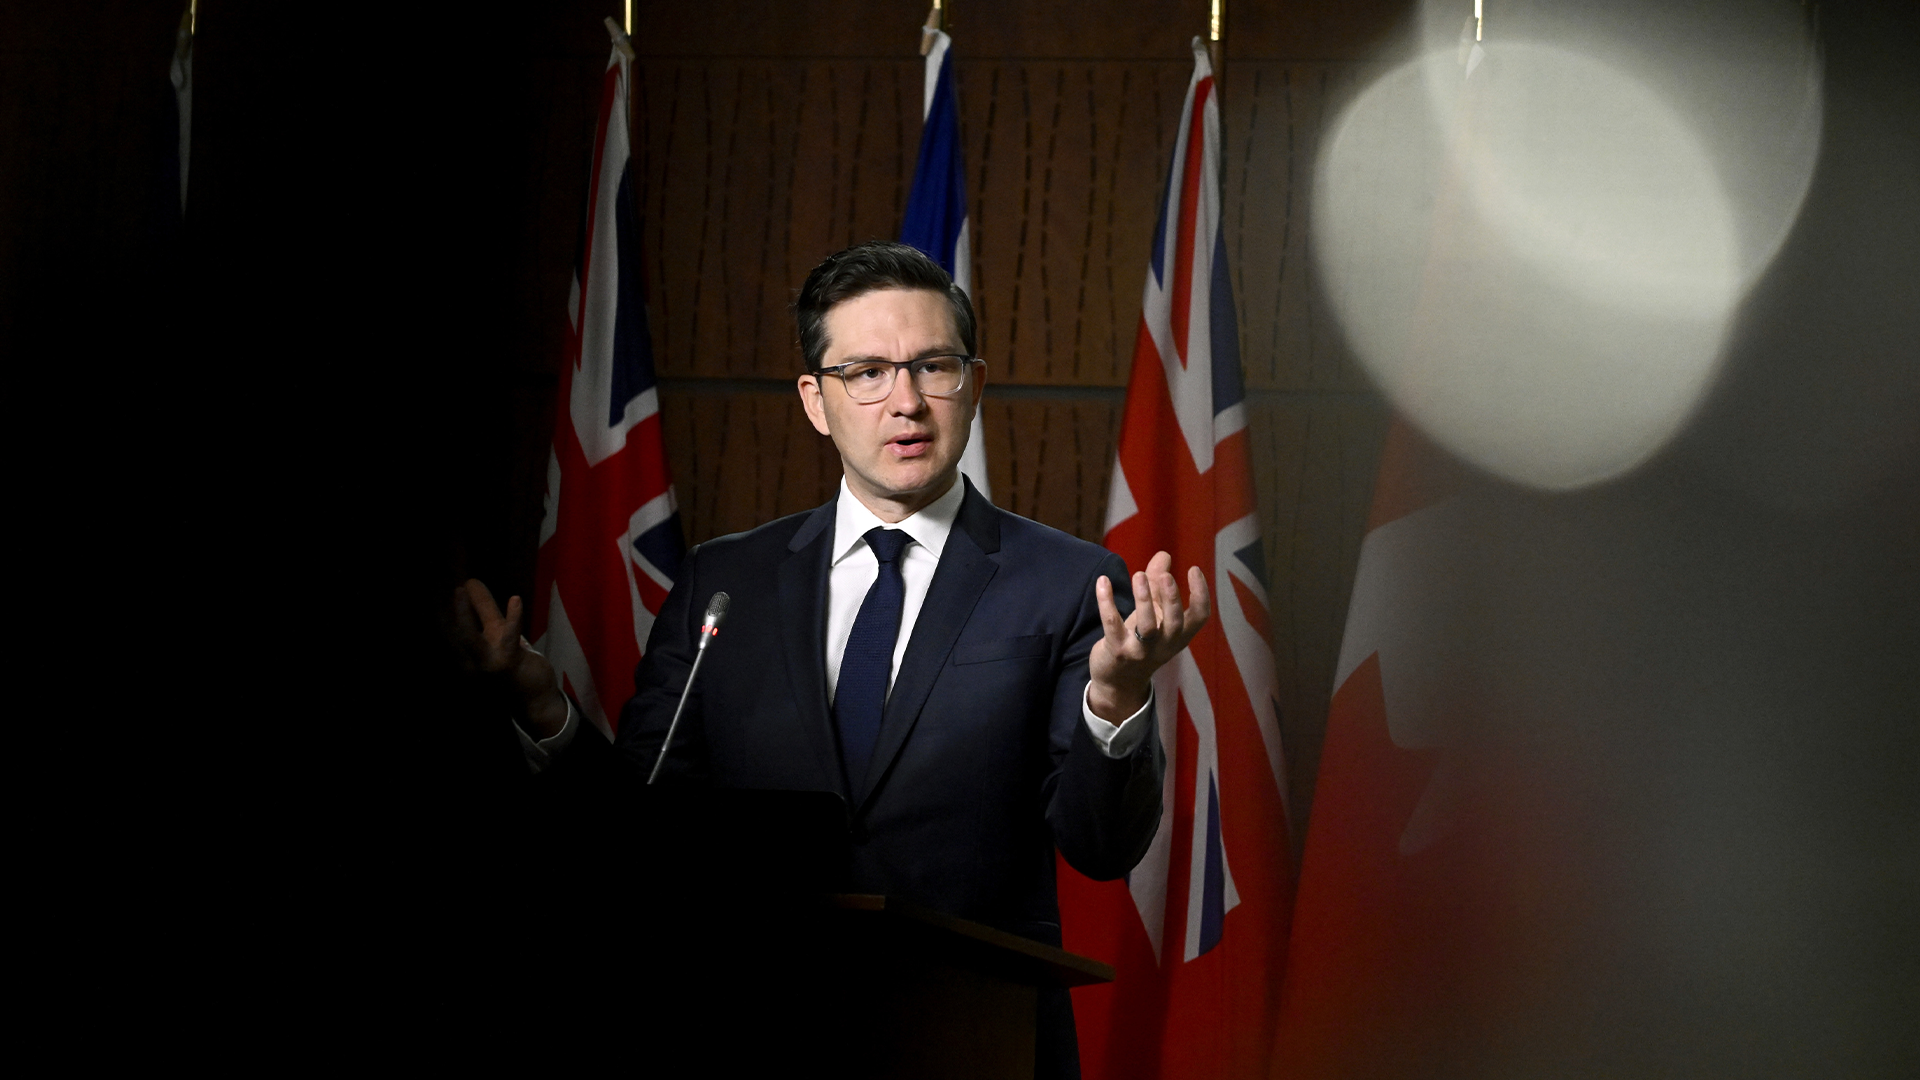 Le chef conservateur a évité mardi de commenter directement les propos de son député Richard Martel qui a été critiqué par plusieurs pour avoir qualifié de «réfugiés illégaux» une femme salvadorienne et son fils arrivés au Canada par le chemin Roxham.